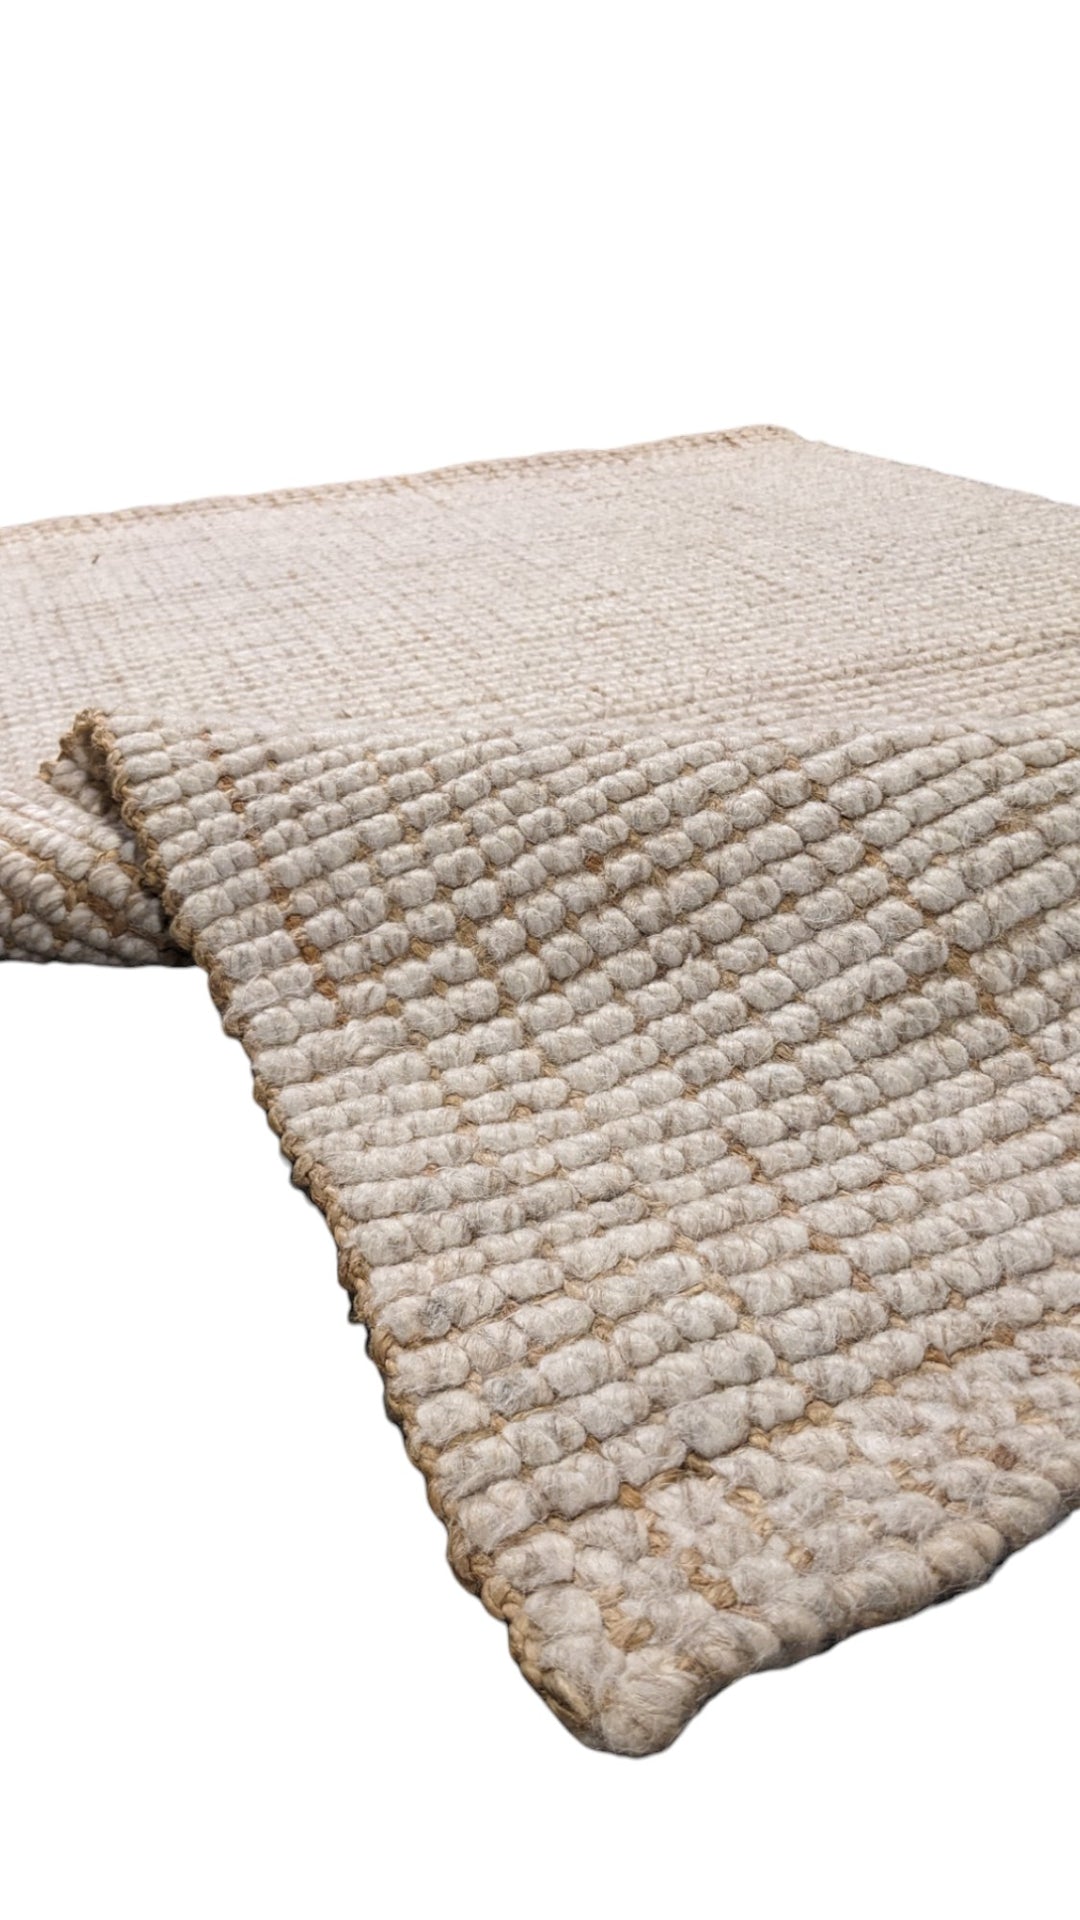 Blend - Size: 5.1 x 3 - Imam Carpet Co